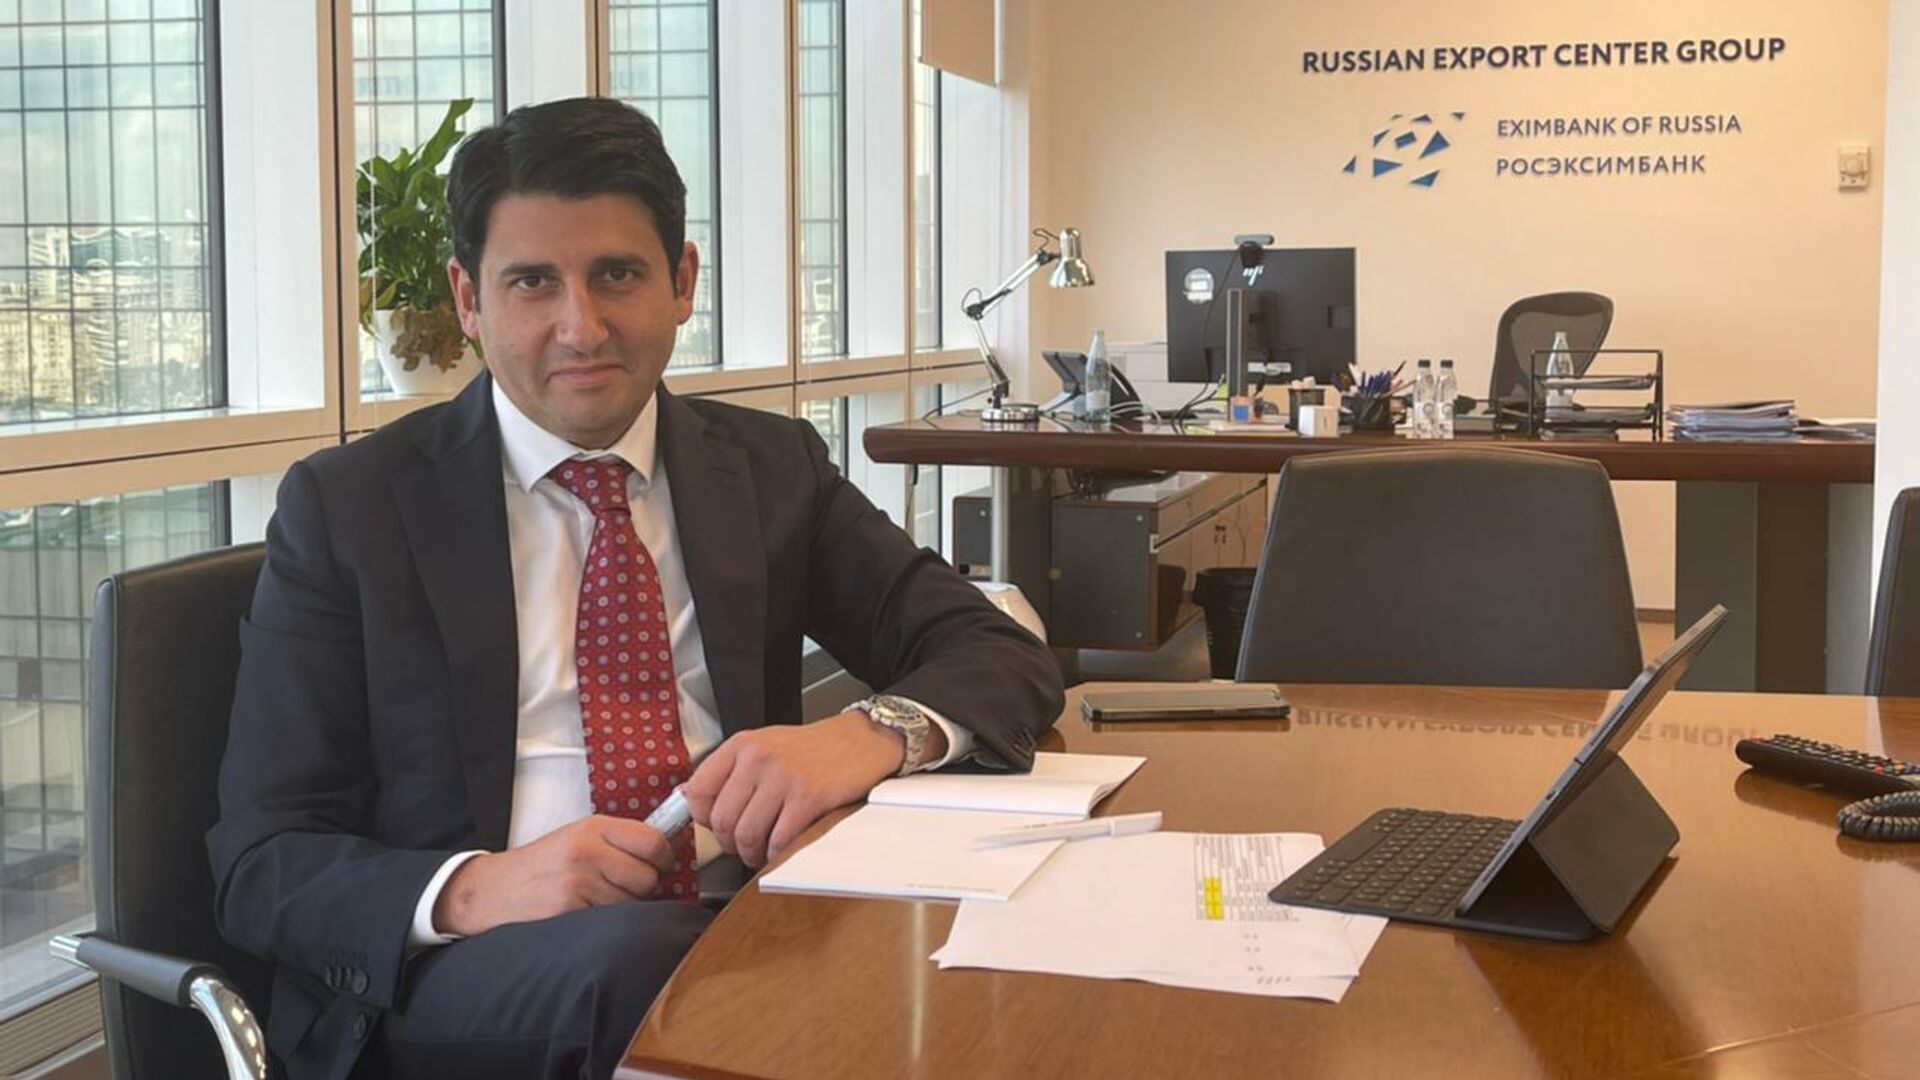 Росэксимбанк ожидает увеличения сделок между банками России и Азербайджана